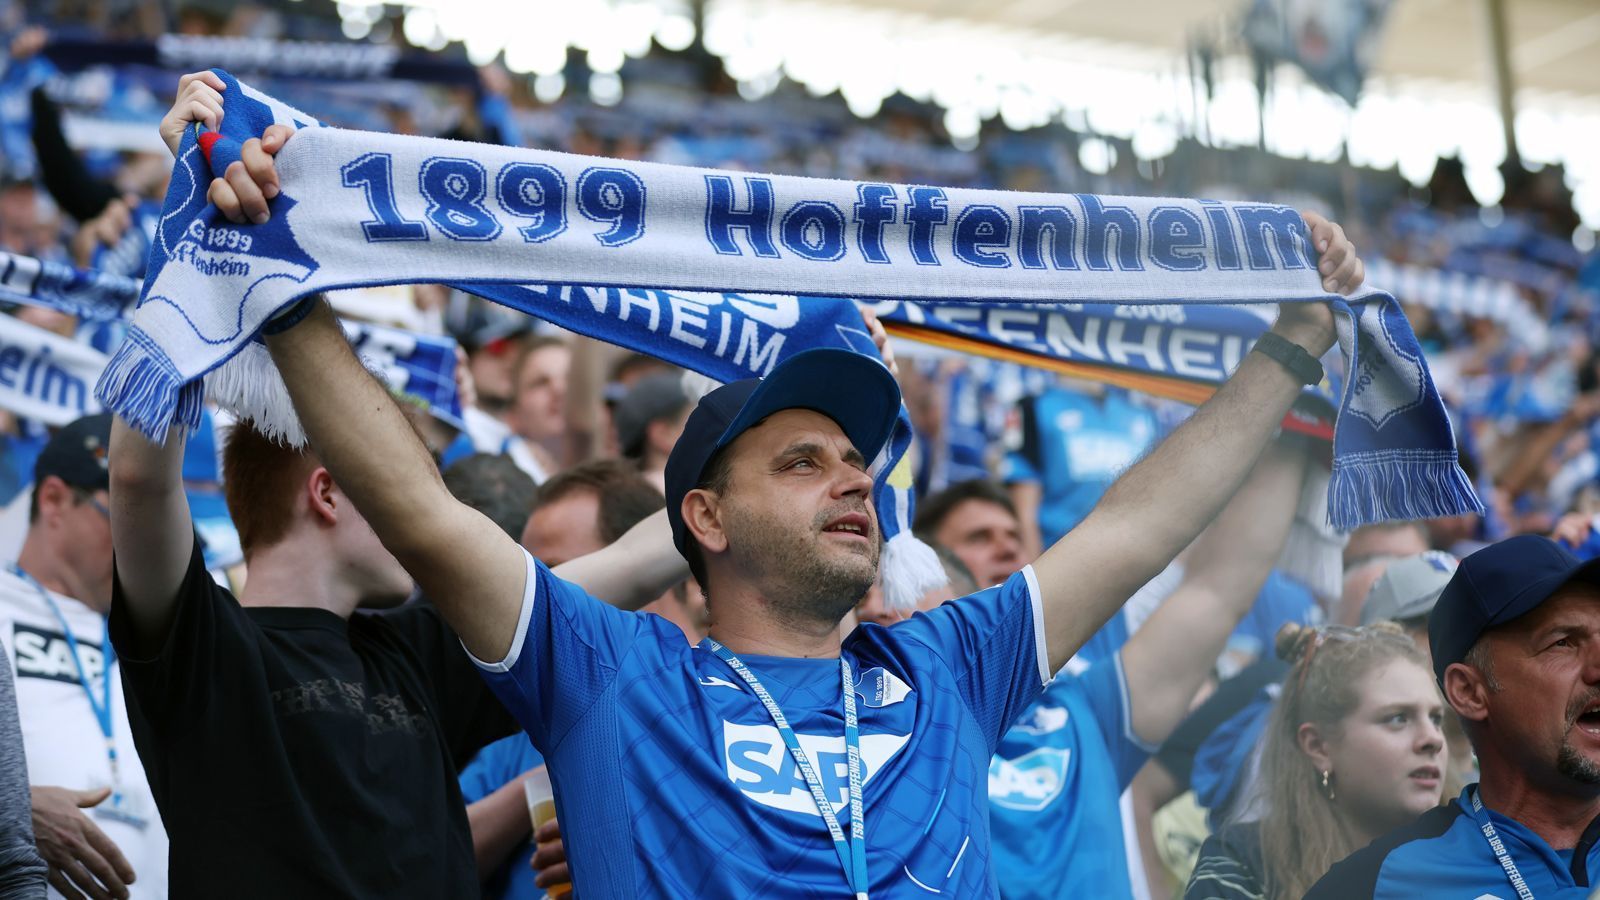 
                <strong>Platz 18 - 1899 Hoffenheim</strong><br>
                &#x2022; Durchschnittliche Anzahl an Auswärtsfans: 897<br>&#x2022; Höchste Anzahl an Auswärtsfahrern: 3.800 (in Stuttgart)<br>&#x2022; Niedrigste Anzahl an Auswärtsfahrern: 250 (bei Hertha BSC)<br>
              